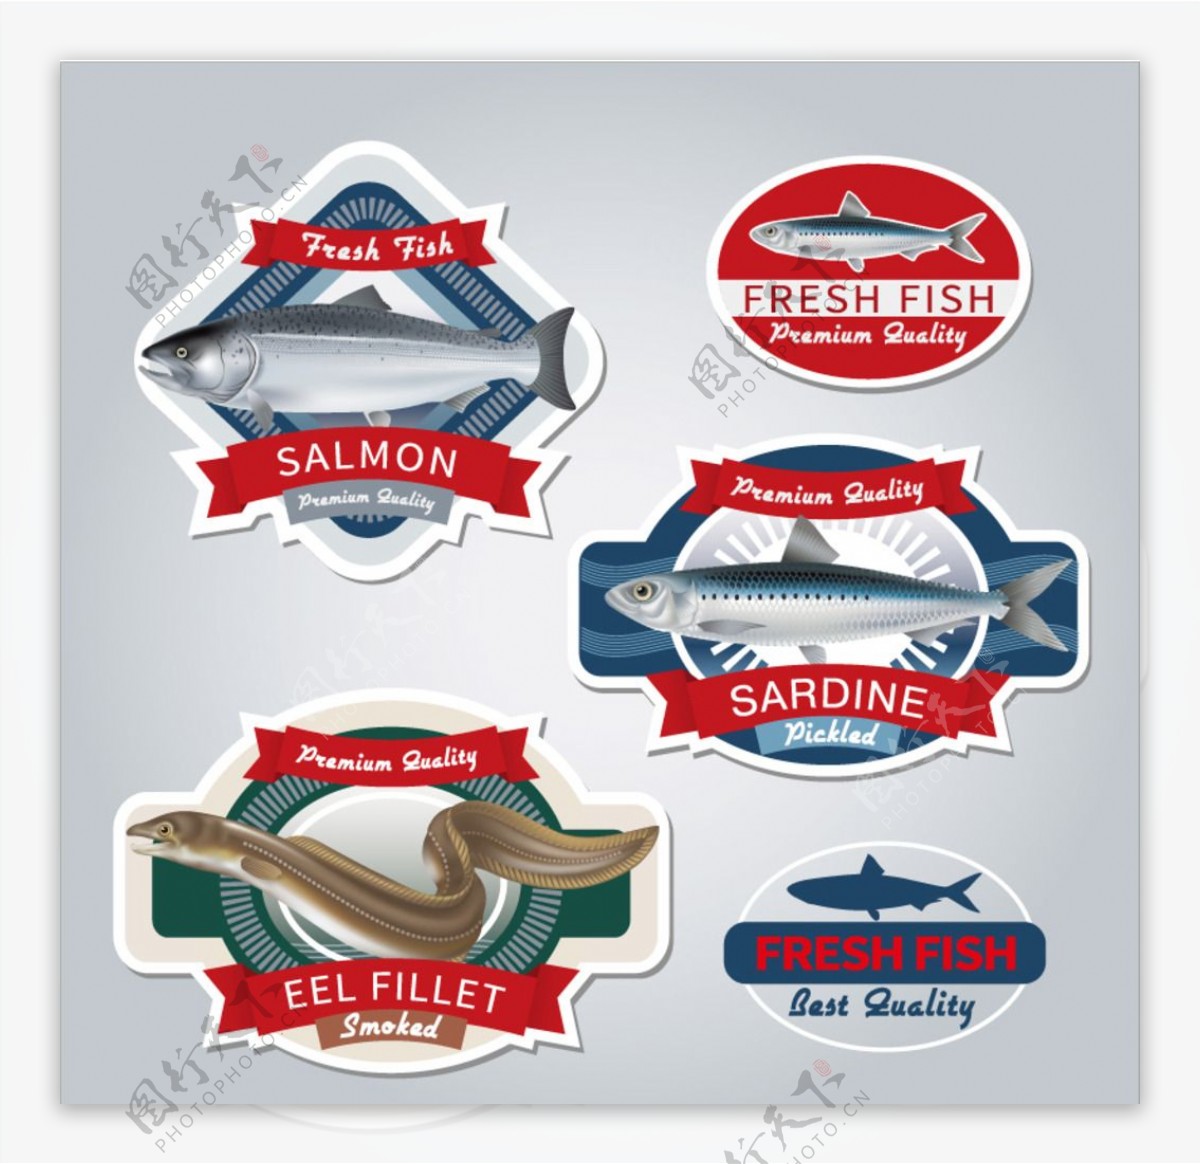 新鲜鱼类产品标签矢量素材图片